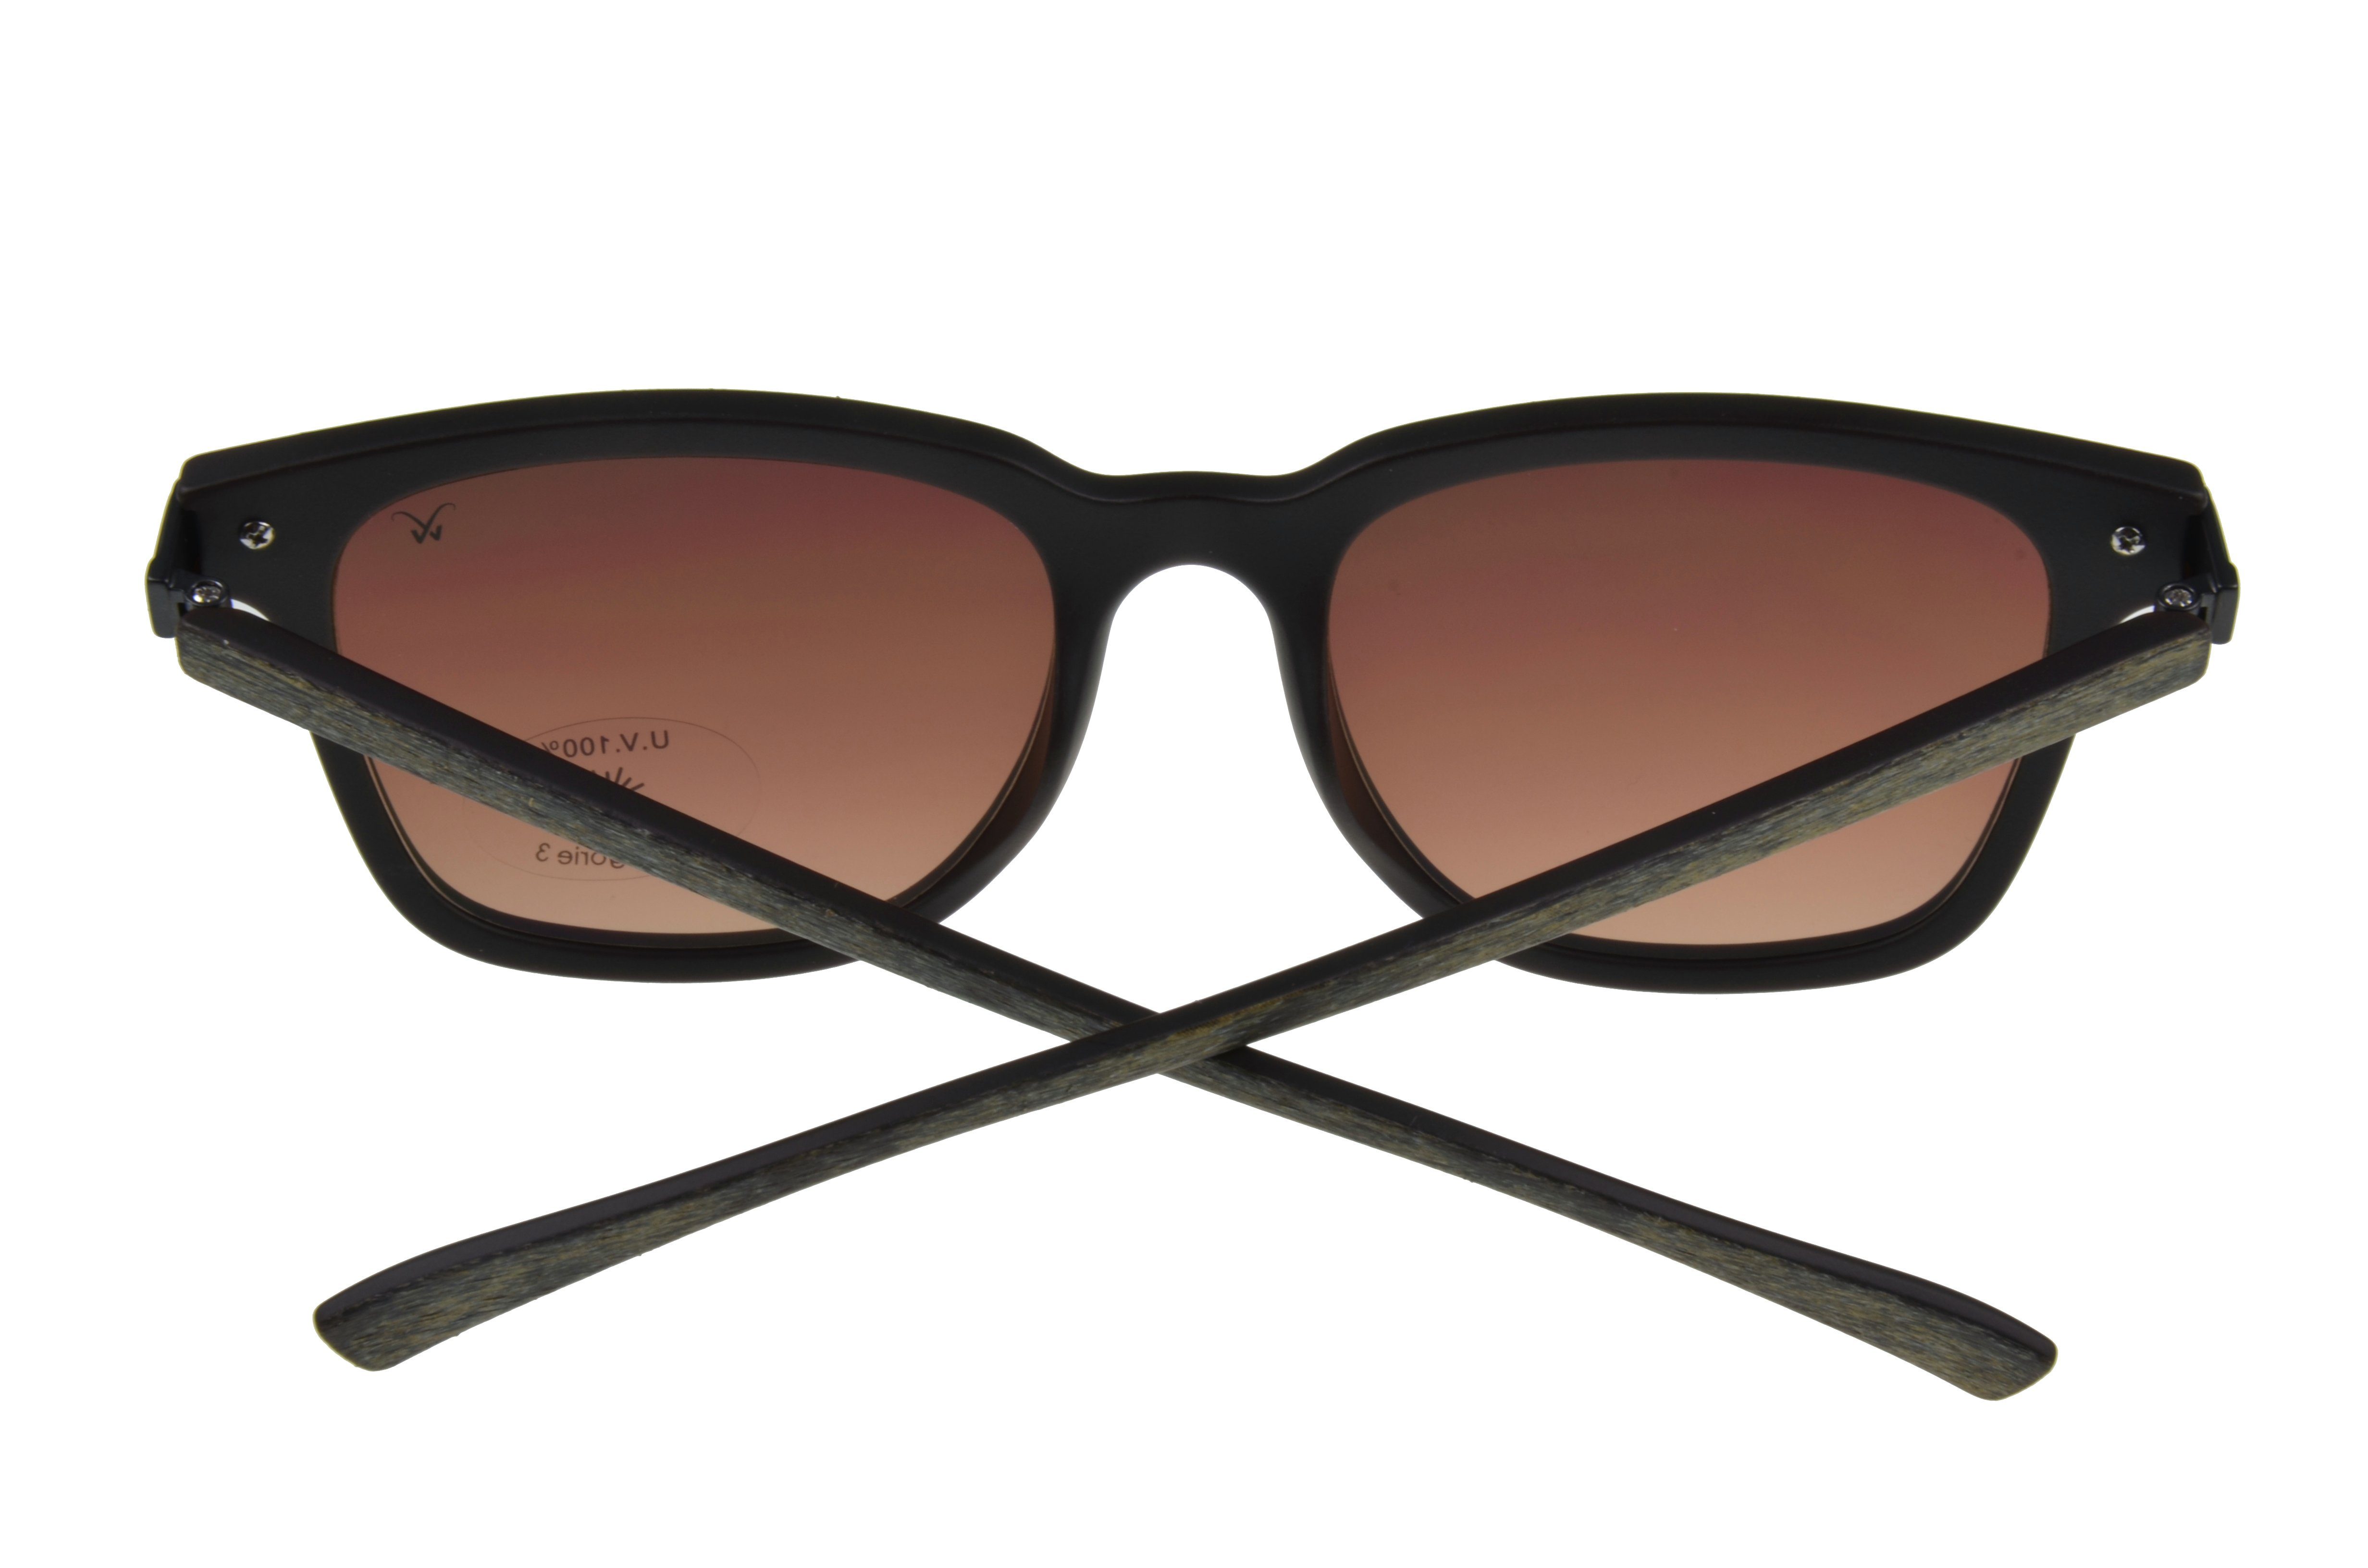 Holzoptik, Brille geschnittenes Unisex GAMSSTYLE Modell grau Gamswild Sonnenbrille Damen Mode Herren WM7032 braun, schmal